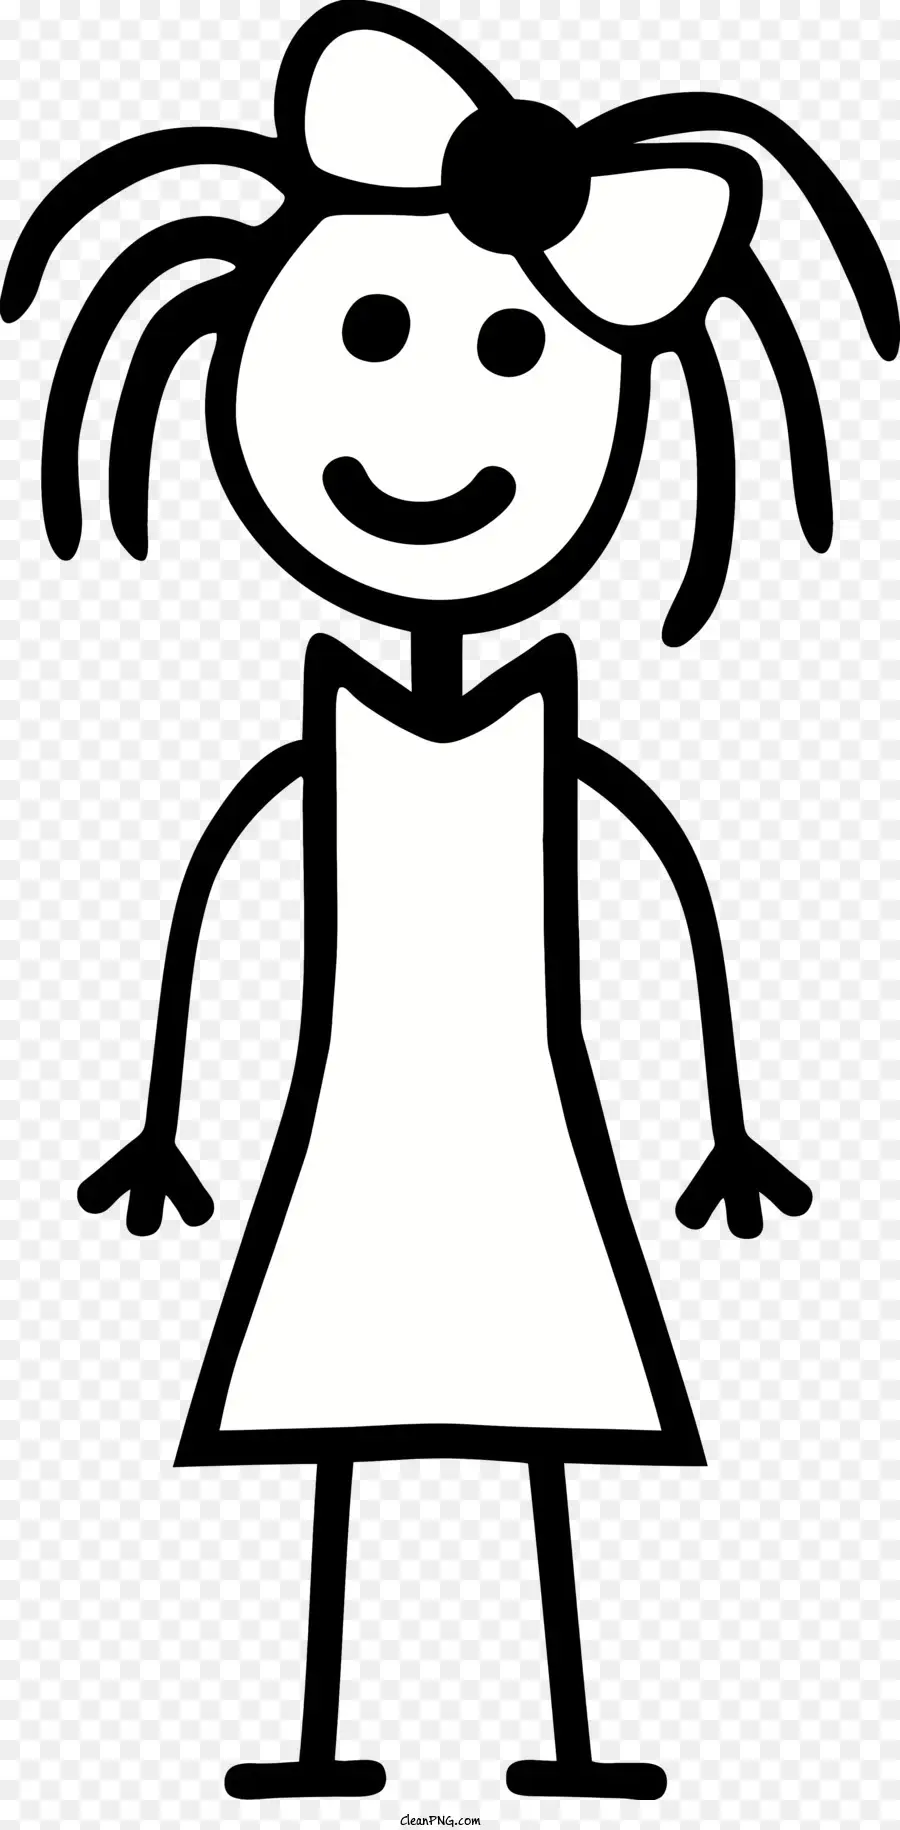 Stickfigur Silhouette Mädchen langes Haar lächeln - Silhouette des lächelnden Mädchens in Bugkleid